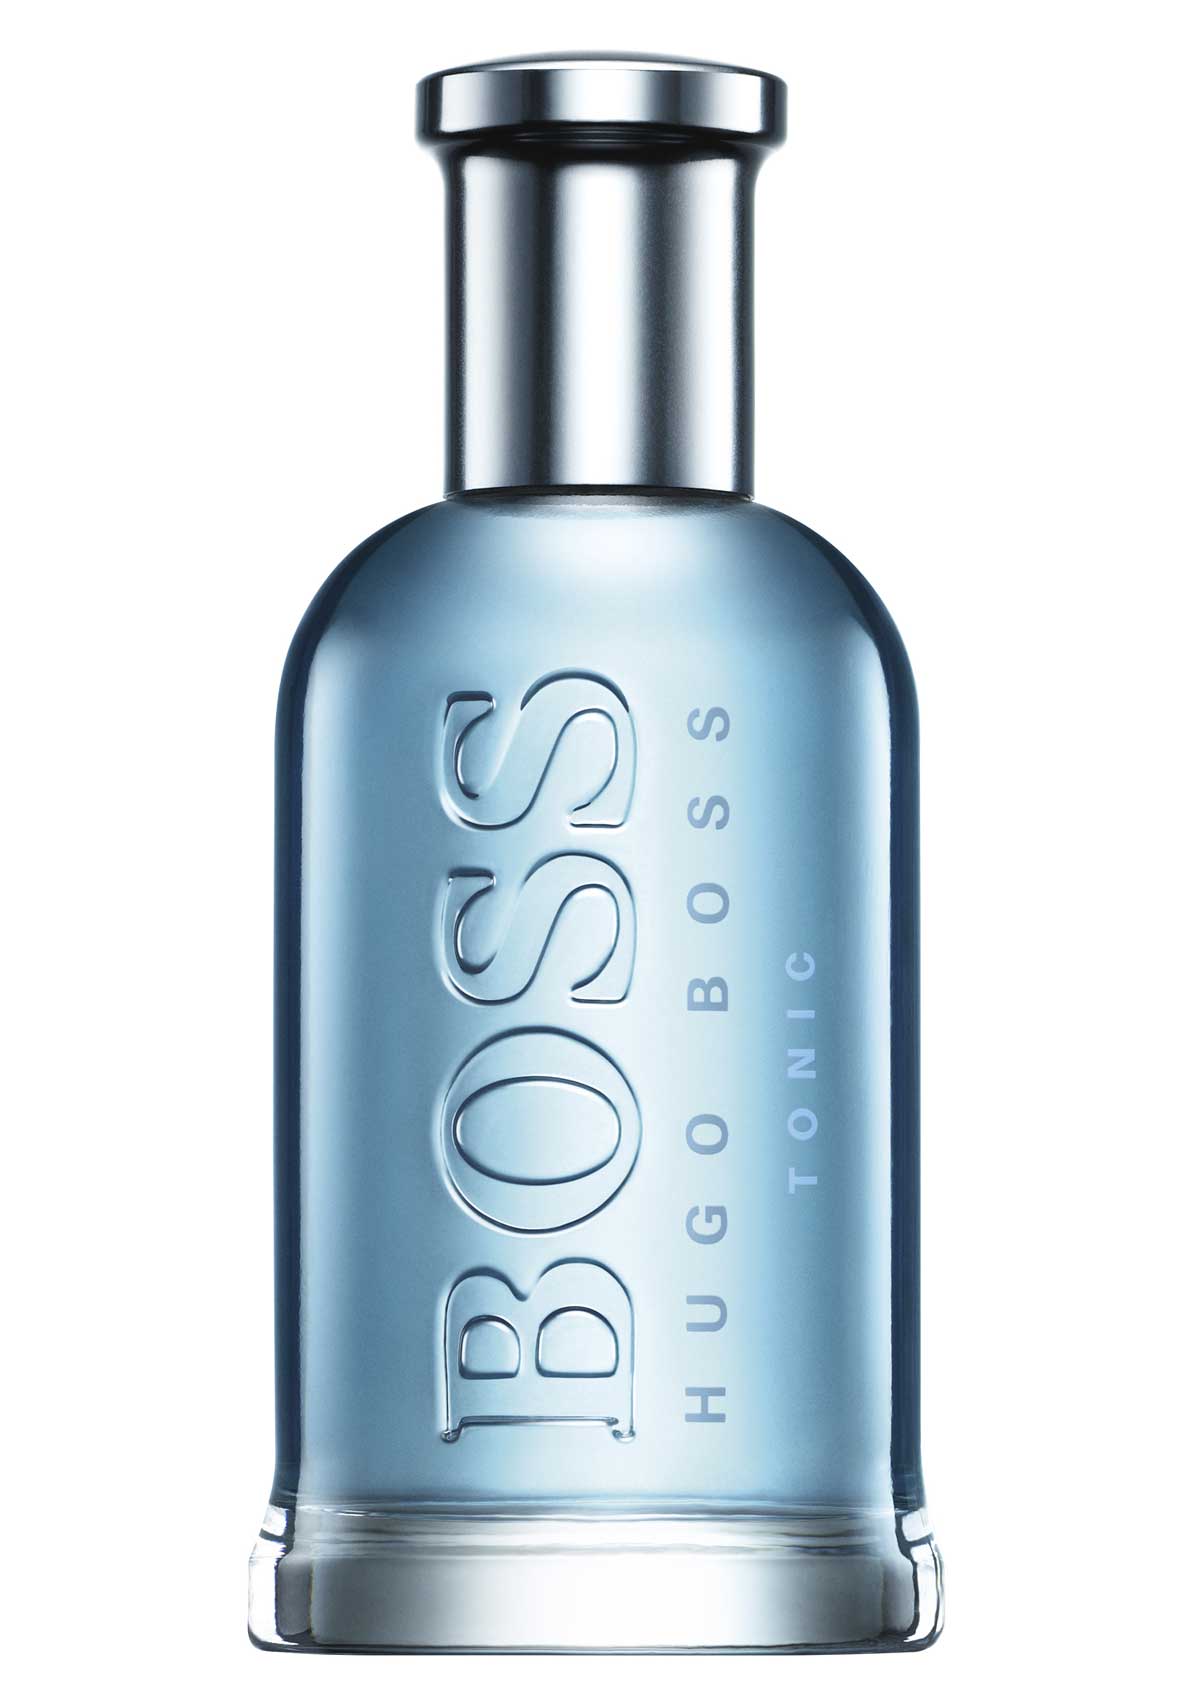 Boss Bottled Tonic Hugo Boss cologne - a new fragrance for men 2017